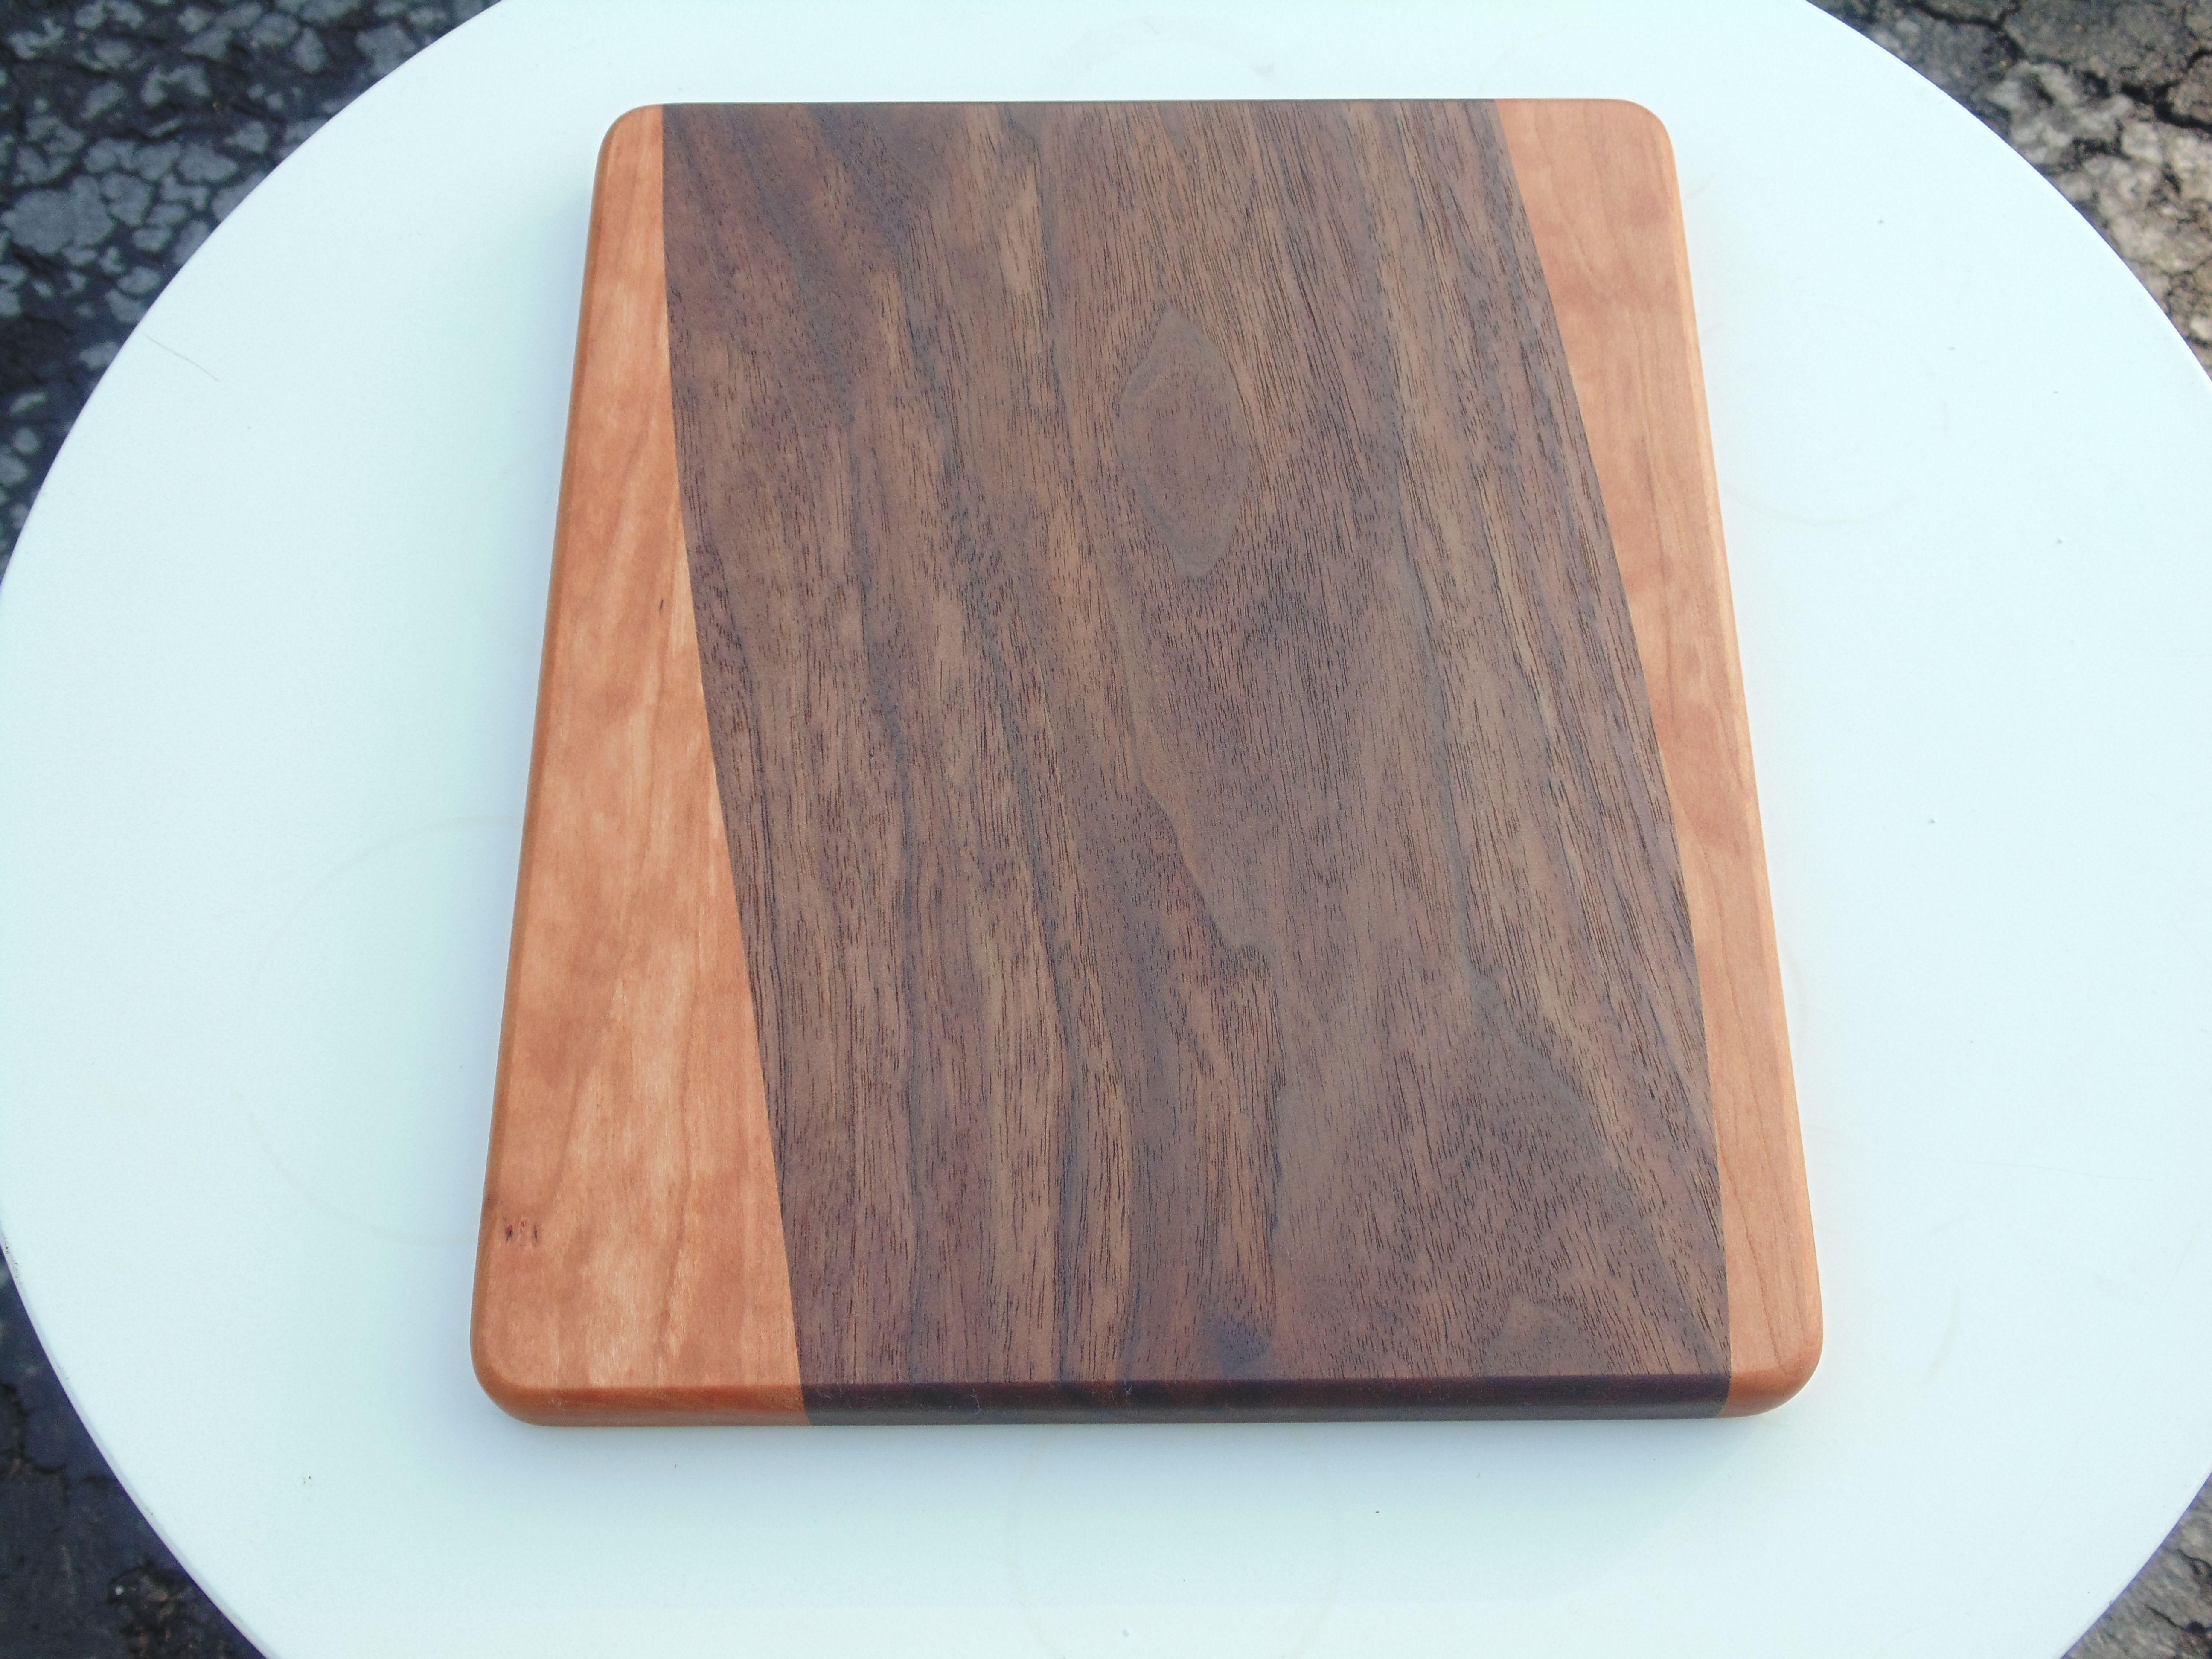 Custom Made Walnutcherry Cutting Board By Insight Woodworking Llc 